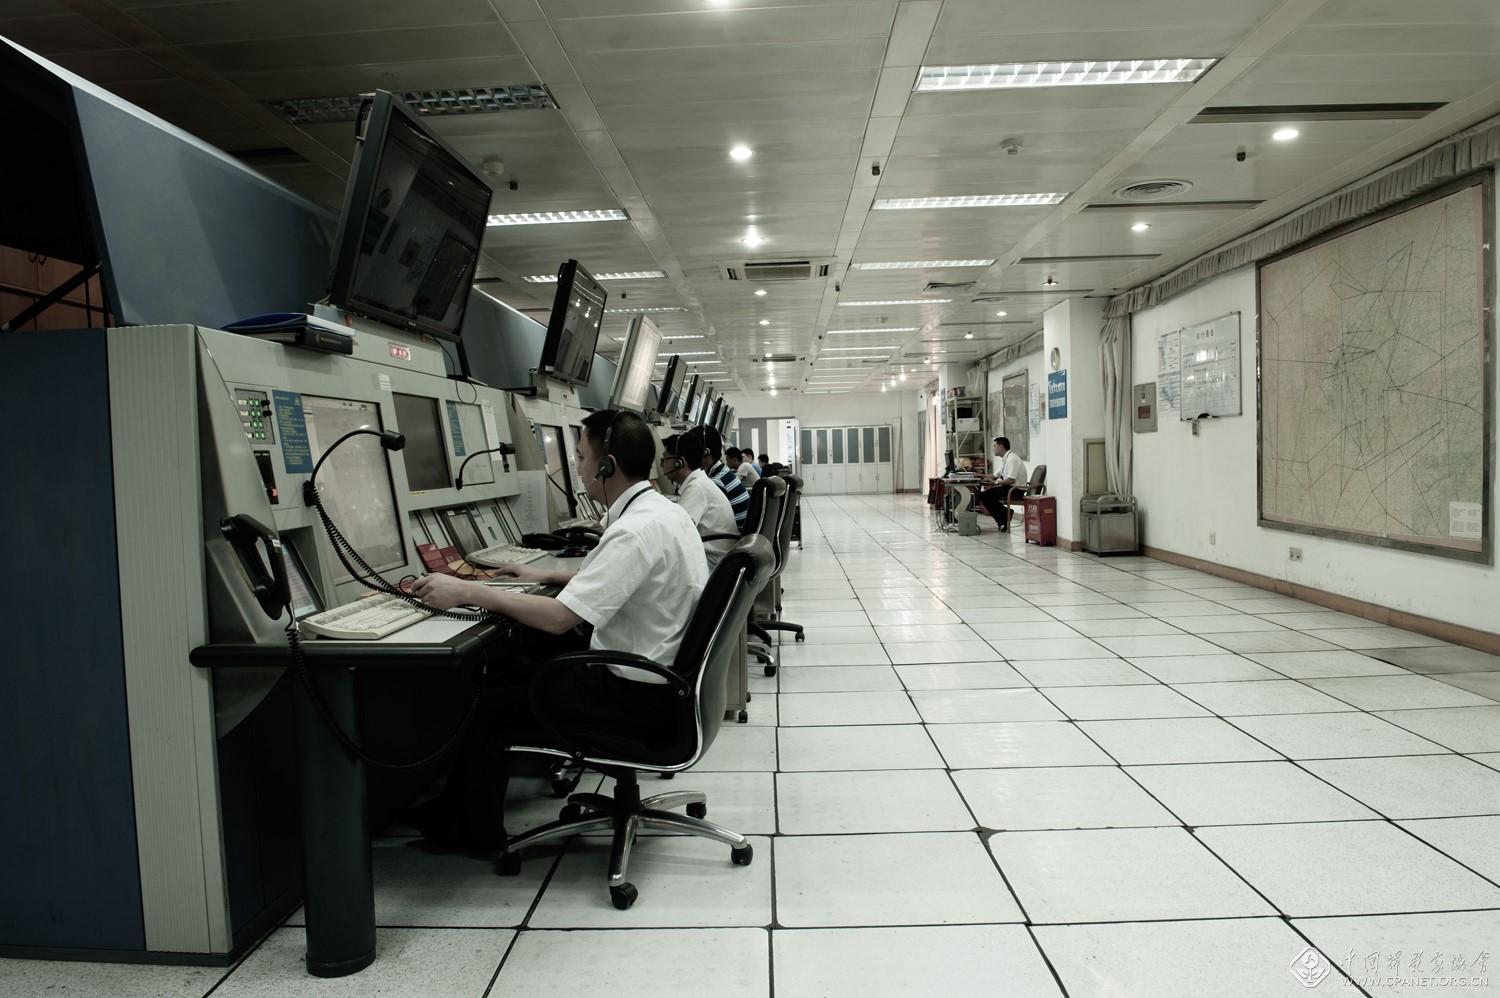 2013年西南空管局管制中心区域管制室即将搬迁张勇摄.jpg